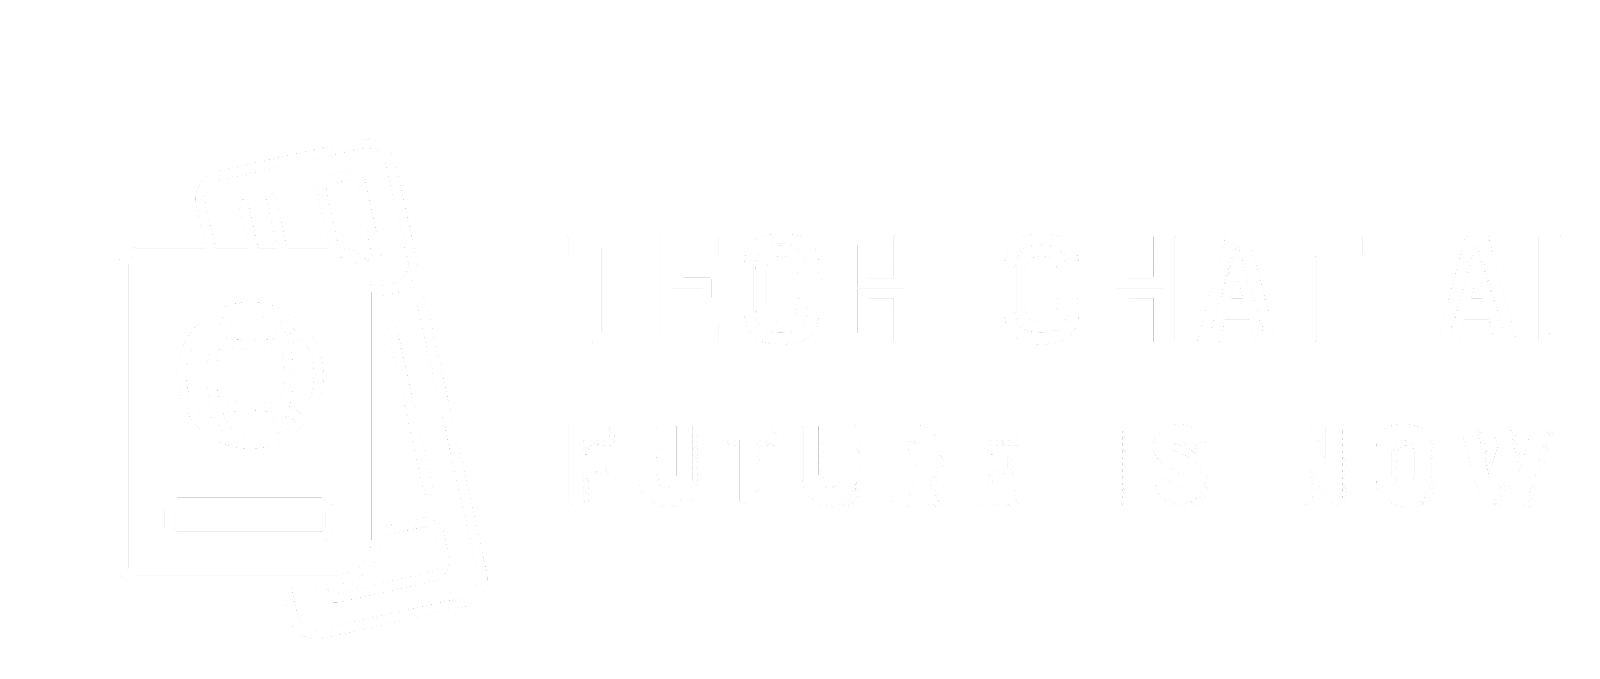 Tech Chat AI